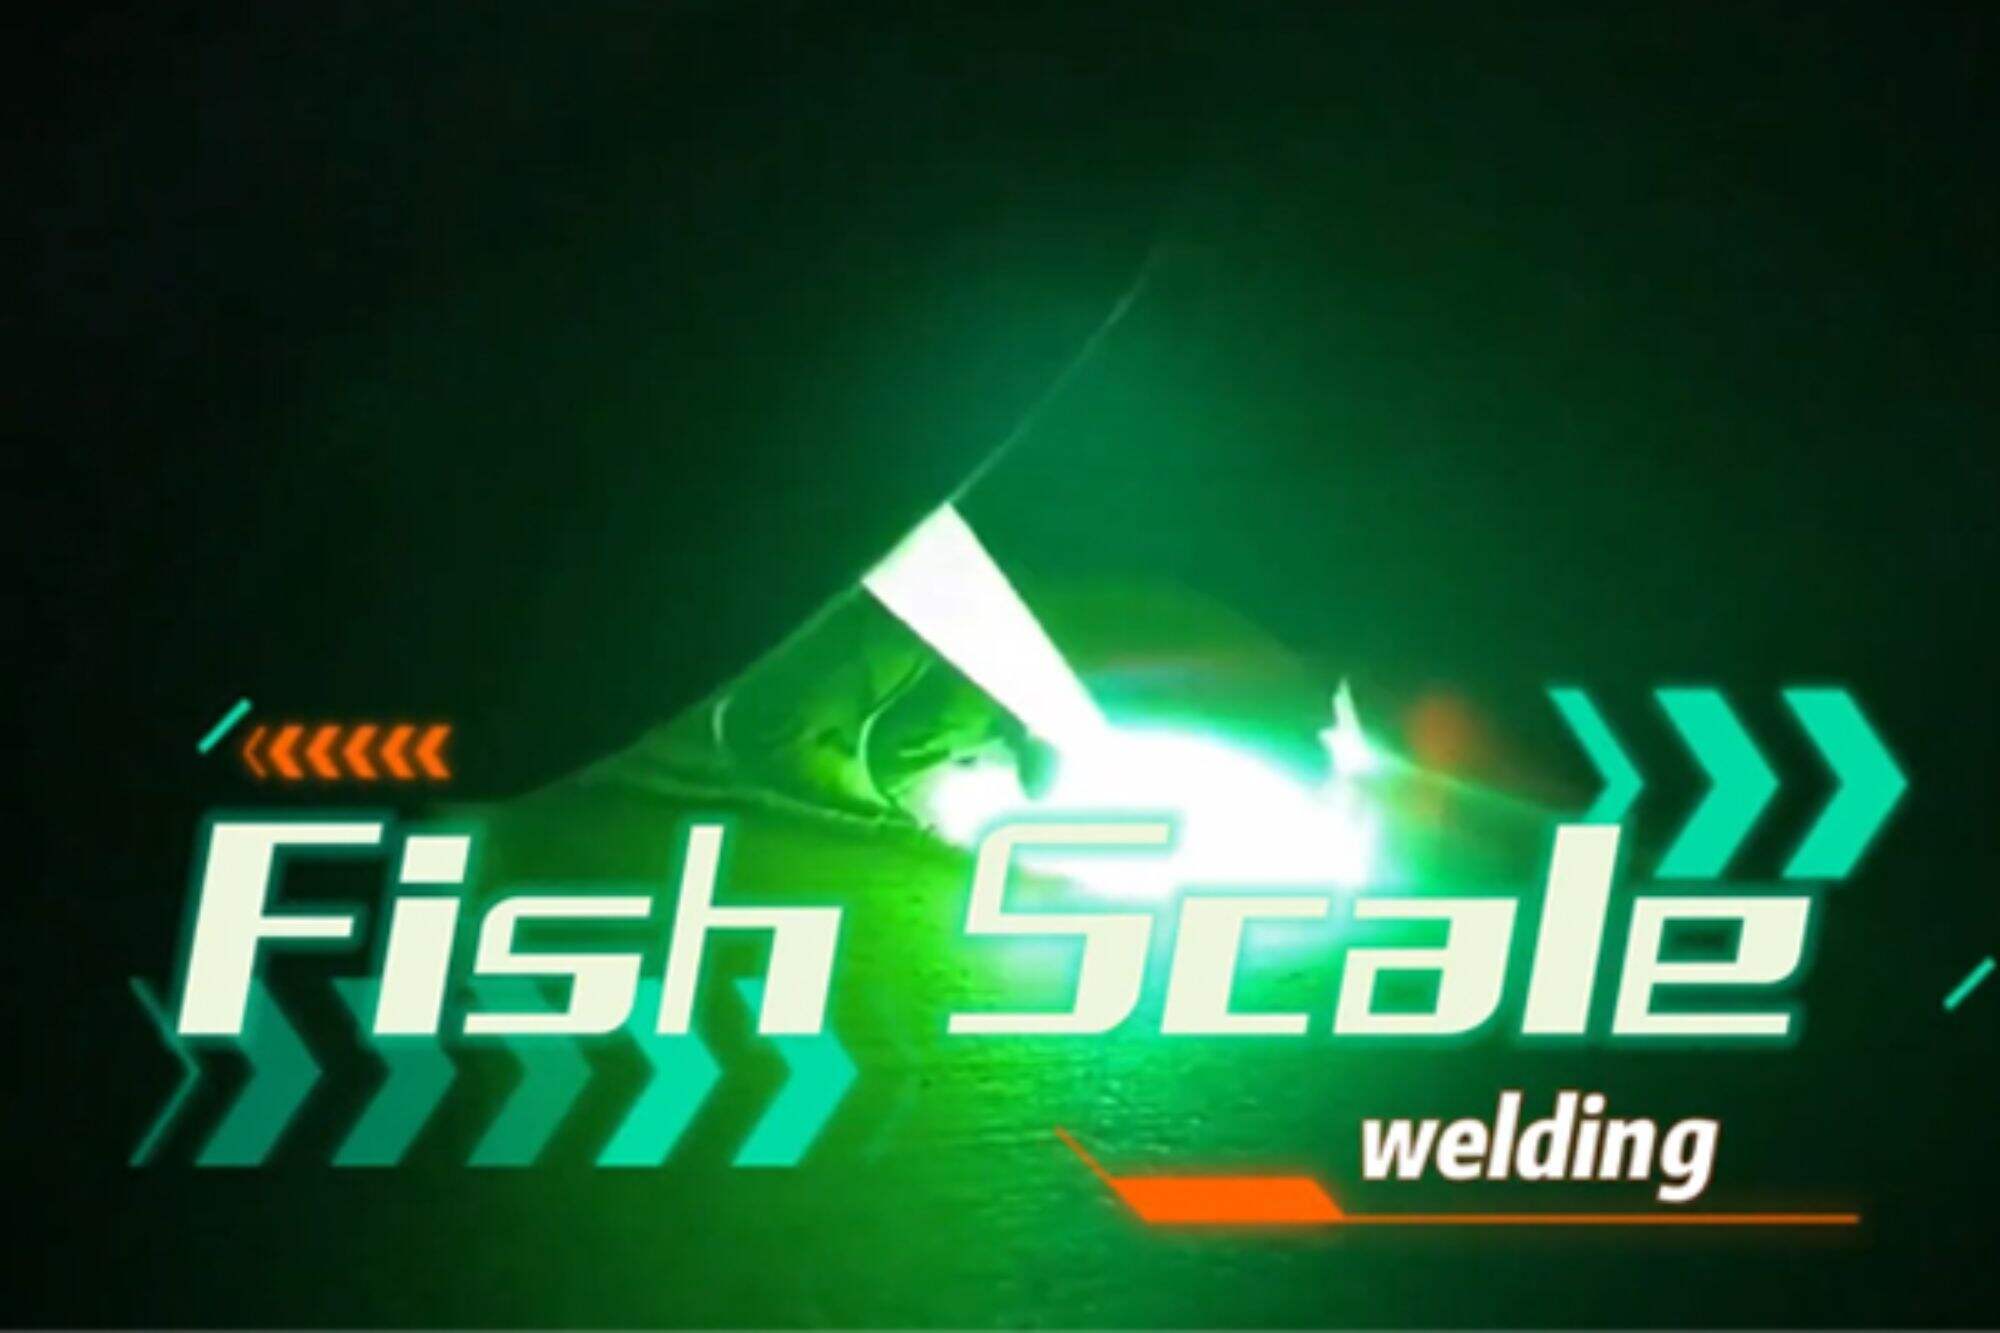 Ручной лазерный сварочный аппарат демонстрирует эффект сварки рыбьей чешуи и прост в эксплуатации.